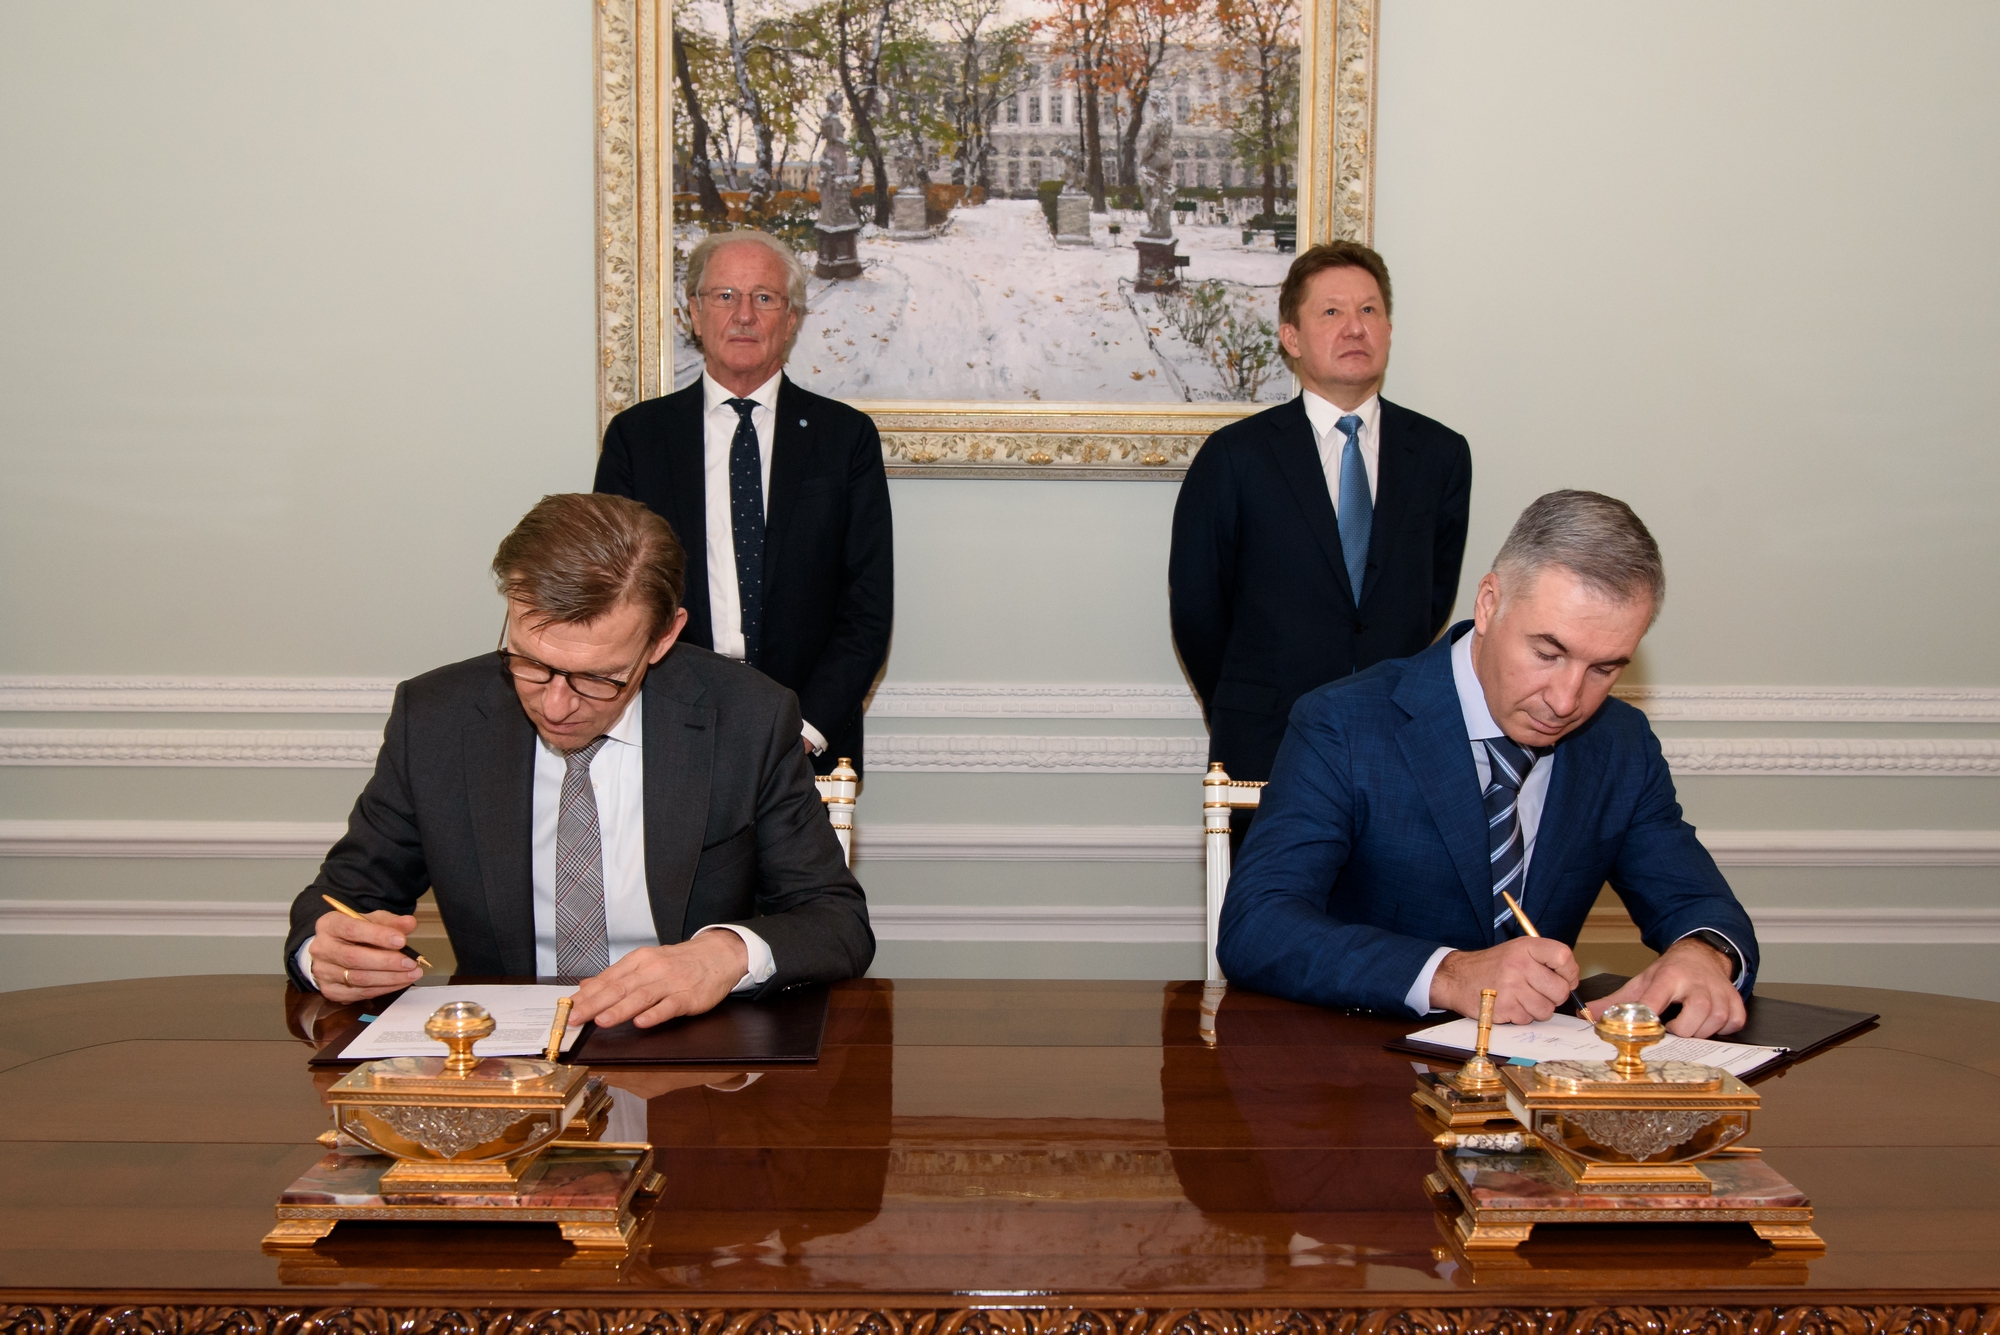 Gazprom, Linde in Ust-Luga complex deal